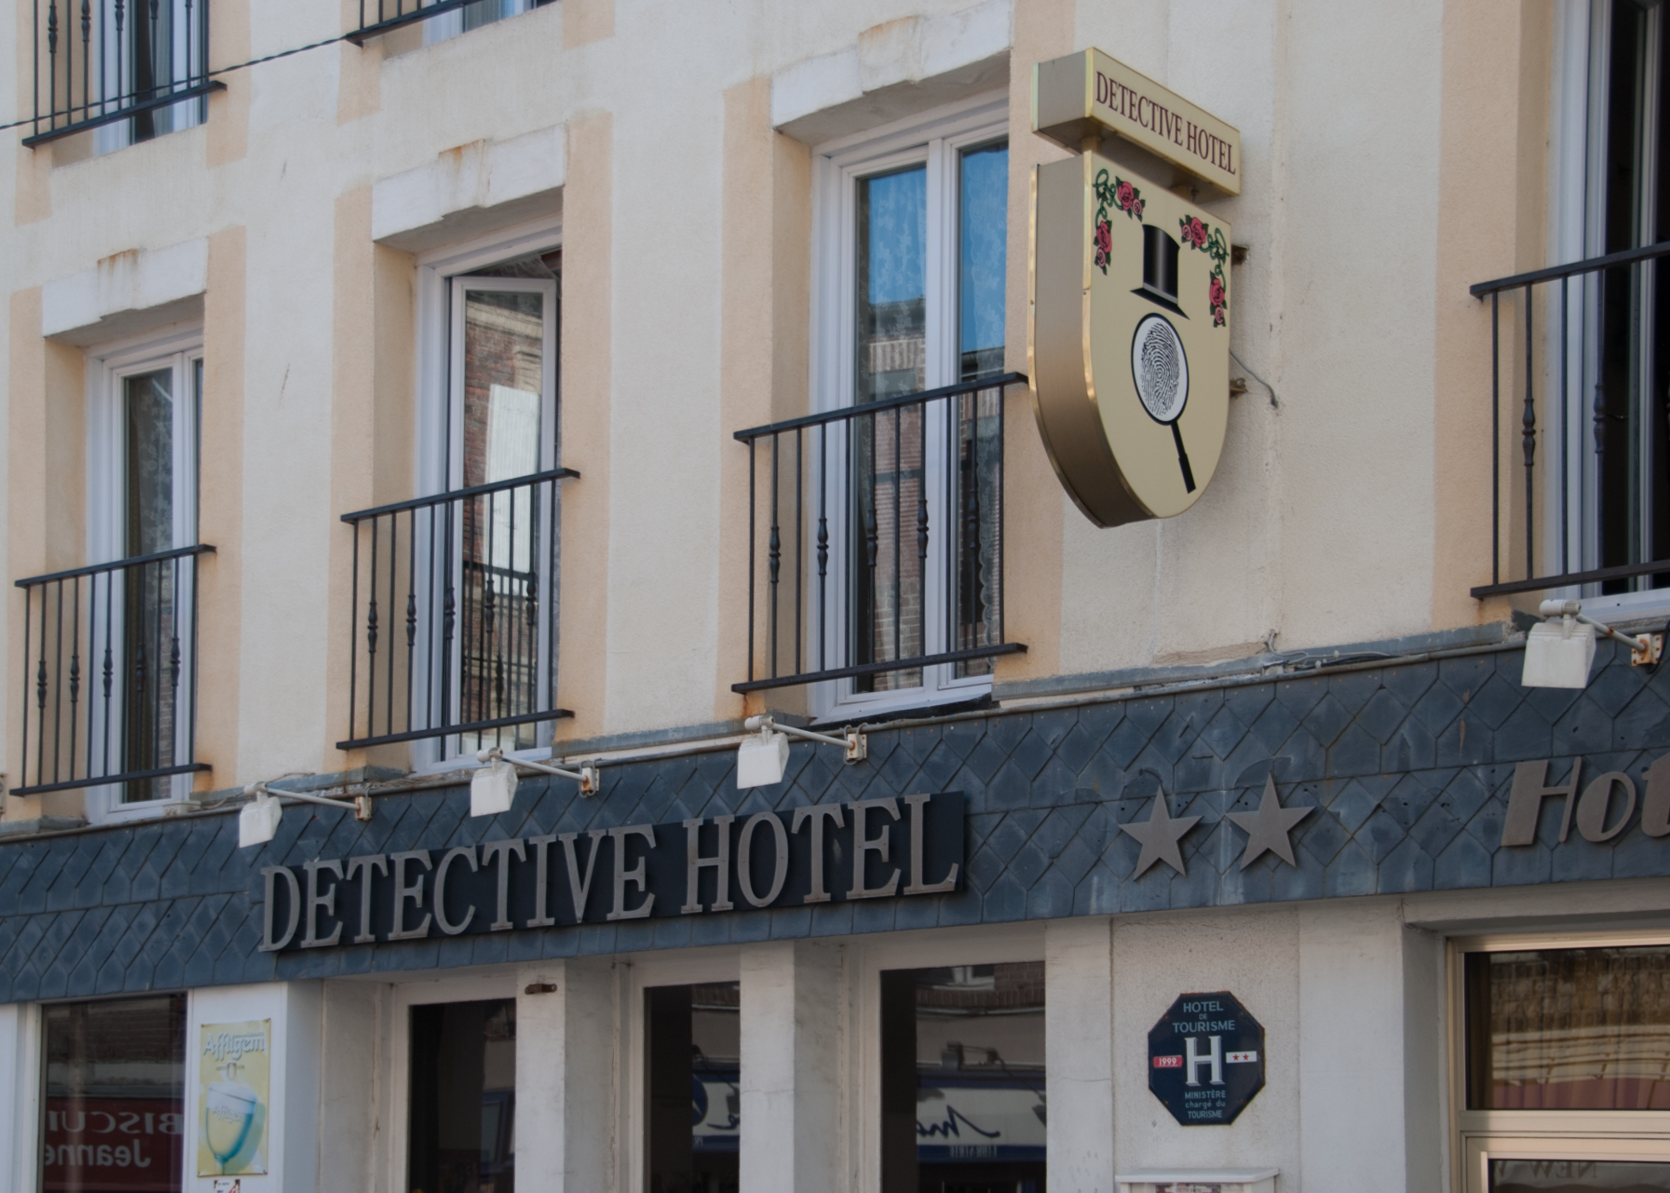 Detective hotel